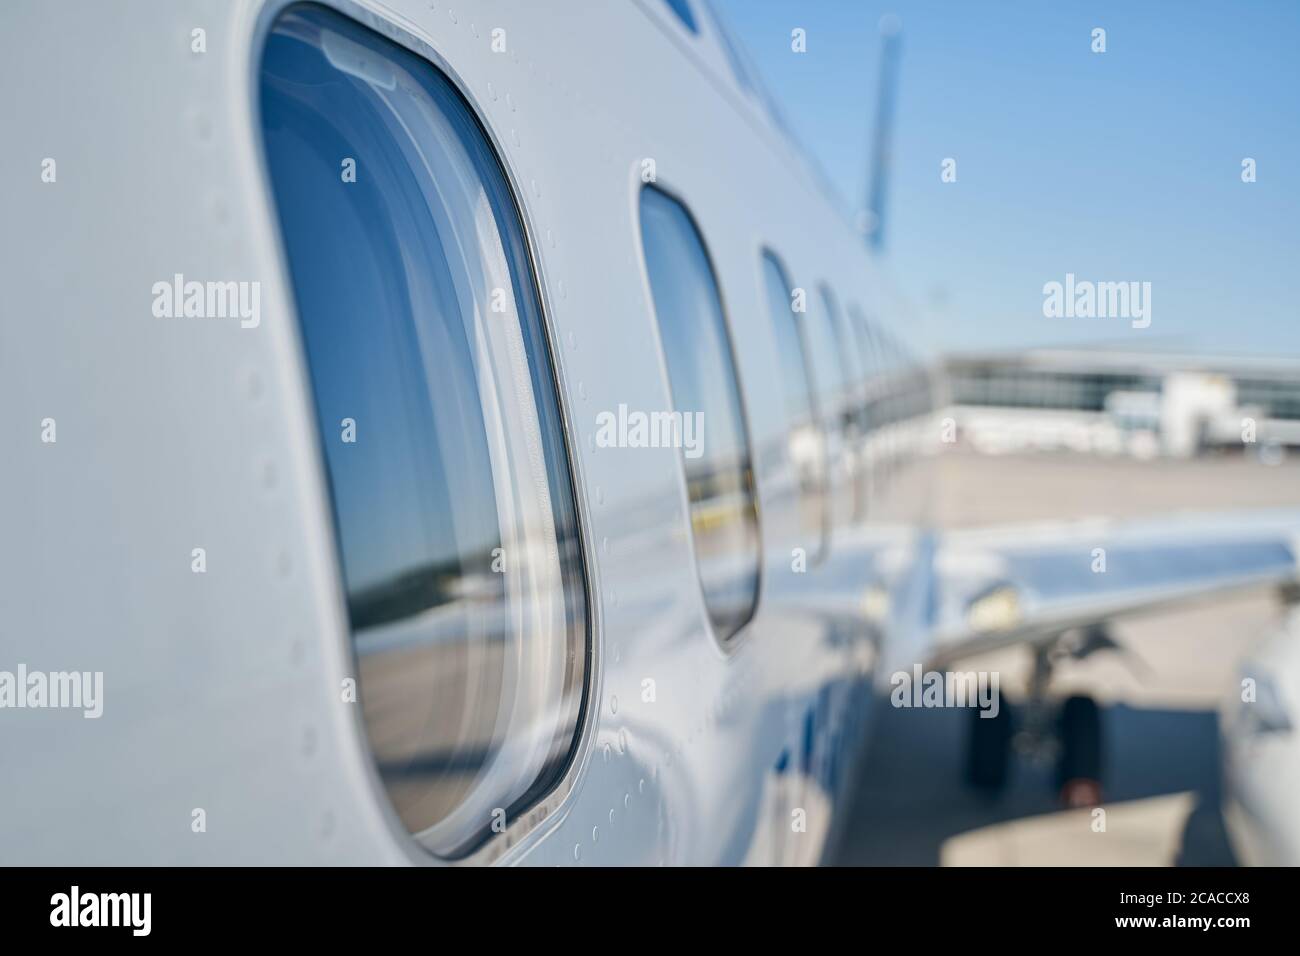 Fenêtres en verre sur le fuselage d'un avion passager Photo Stock - Alamy